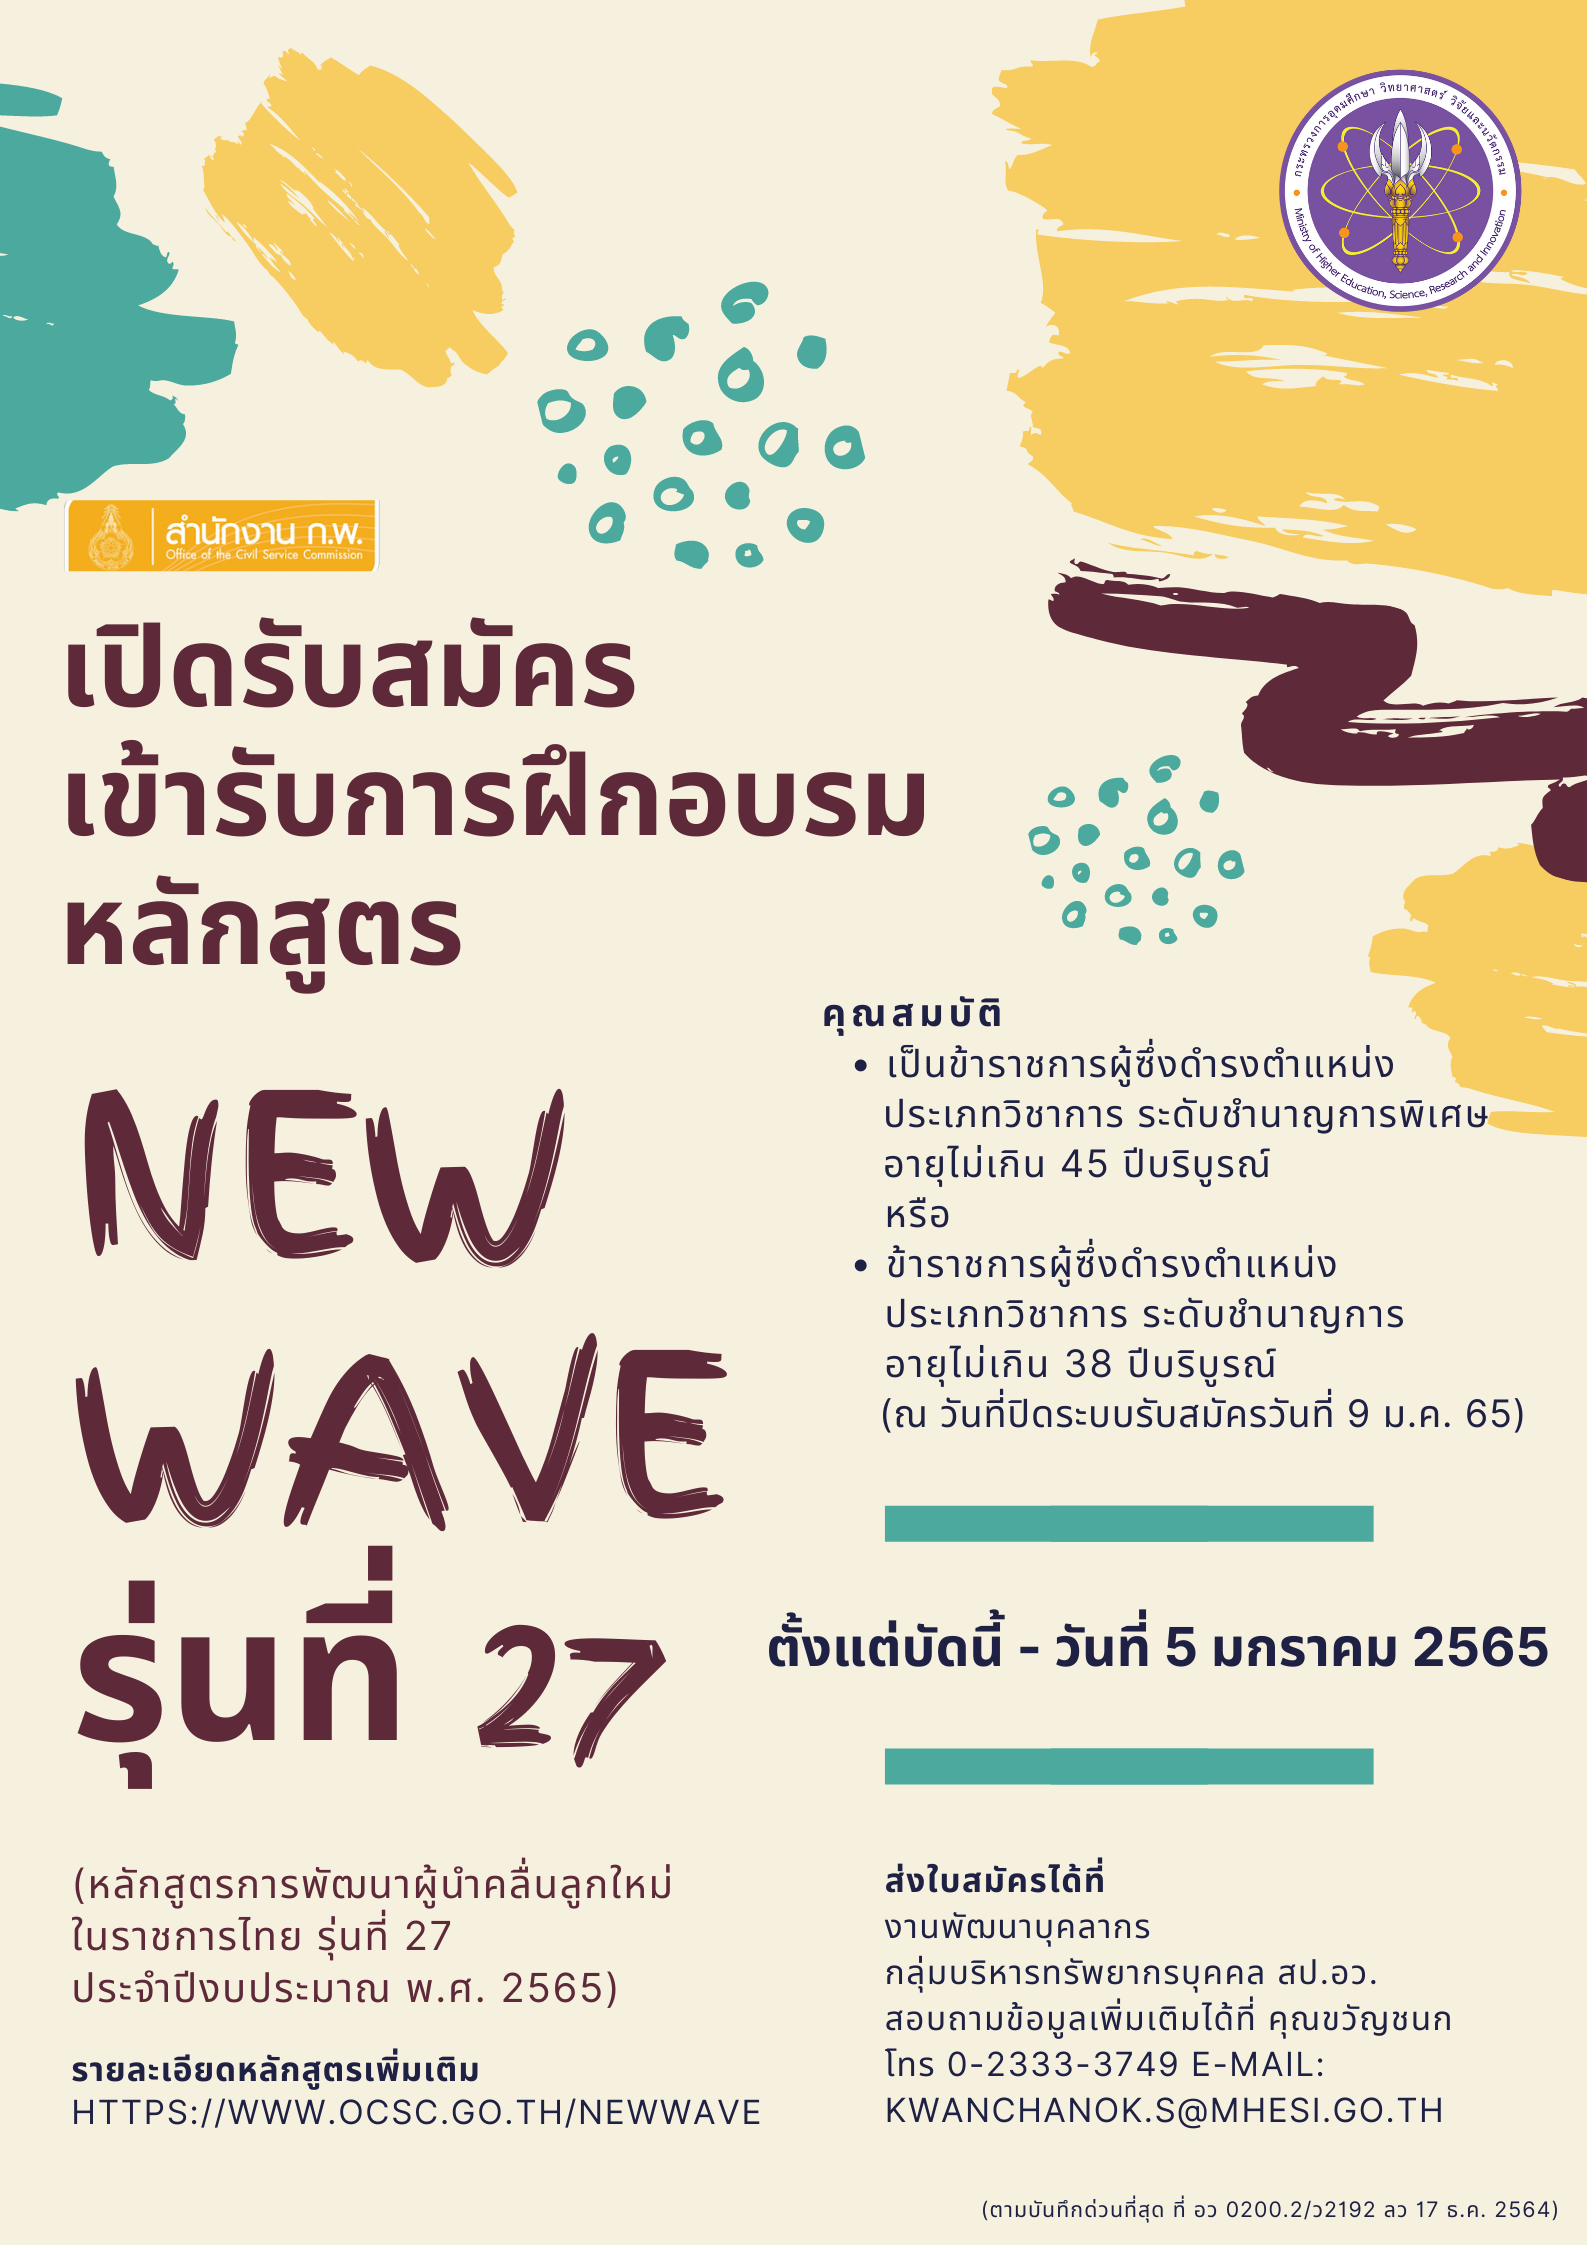 ประชาสมพนธ New Wave 27